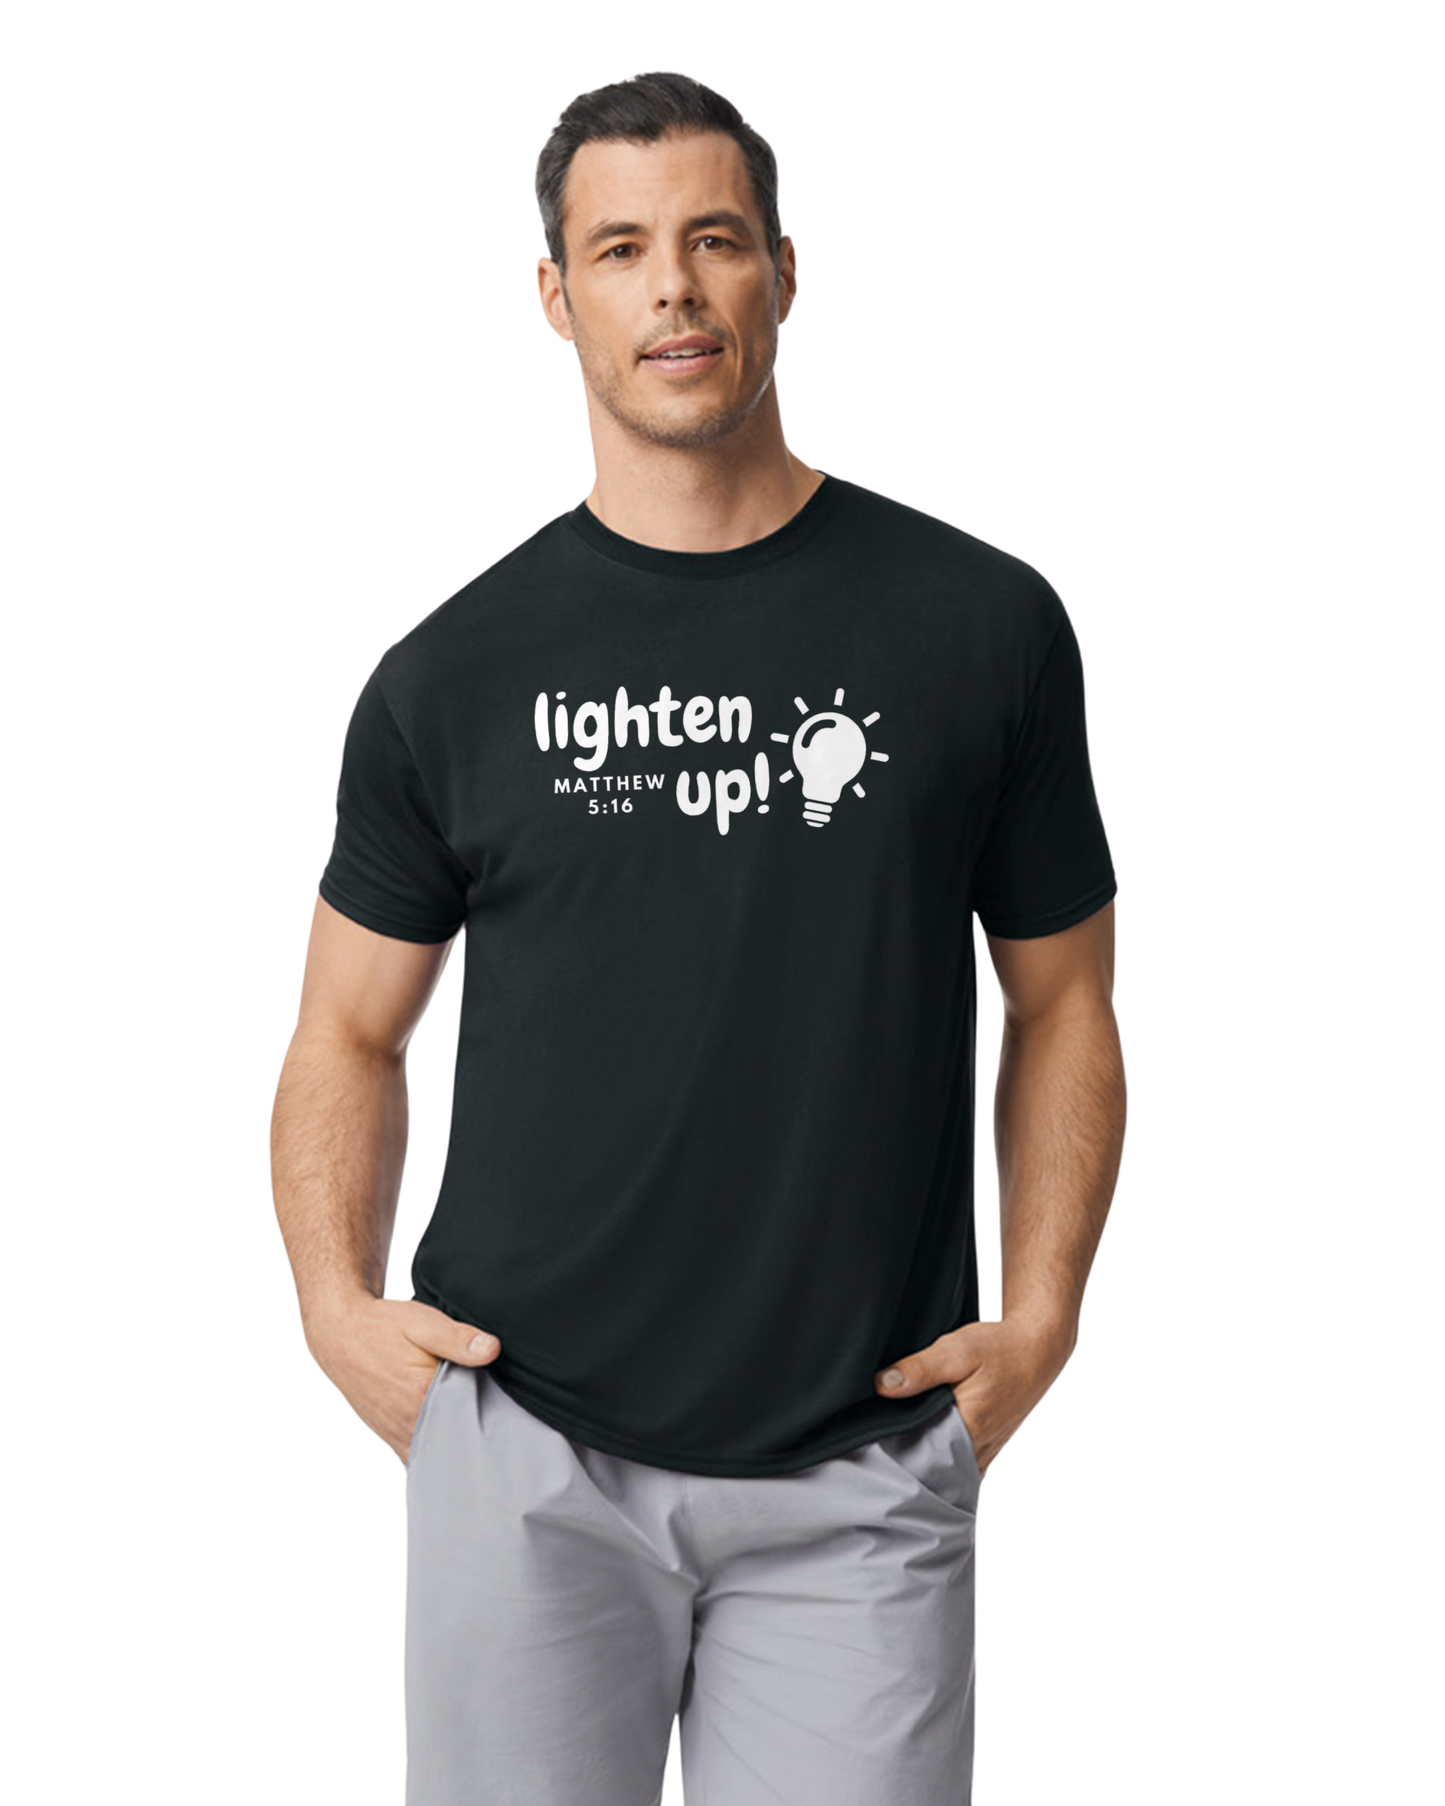 Lighten Up Men's Performance Shirt